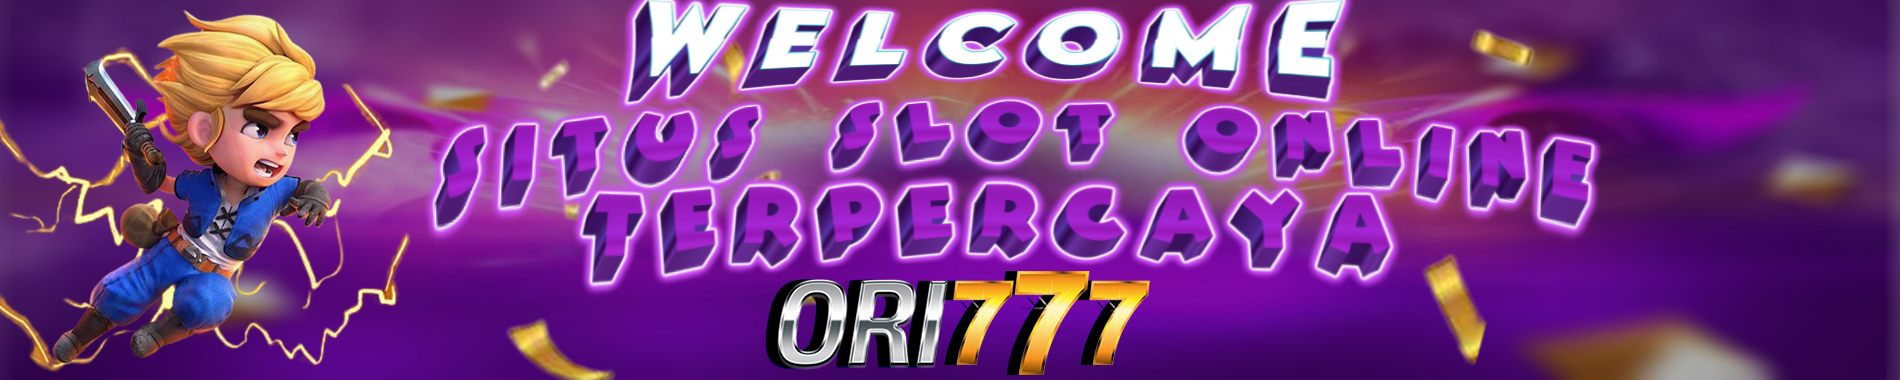 Selamat Datang Di ORI777 Slot Online Terpercaya